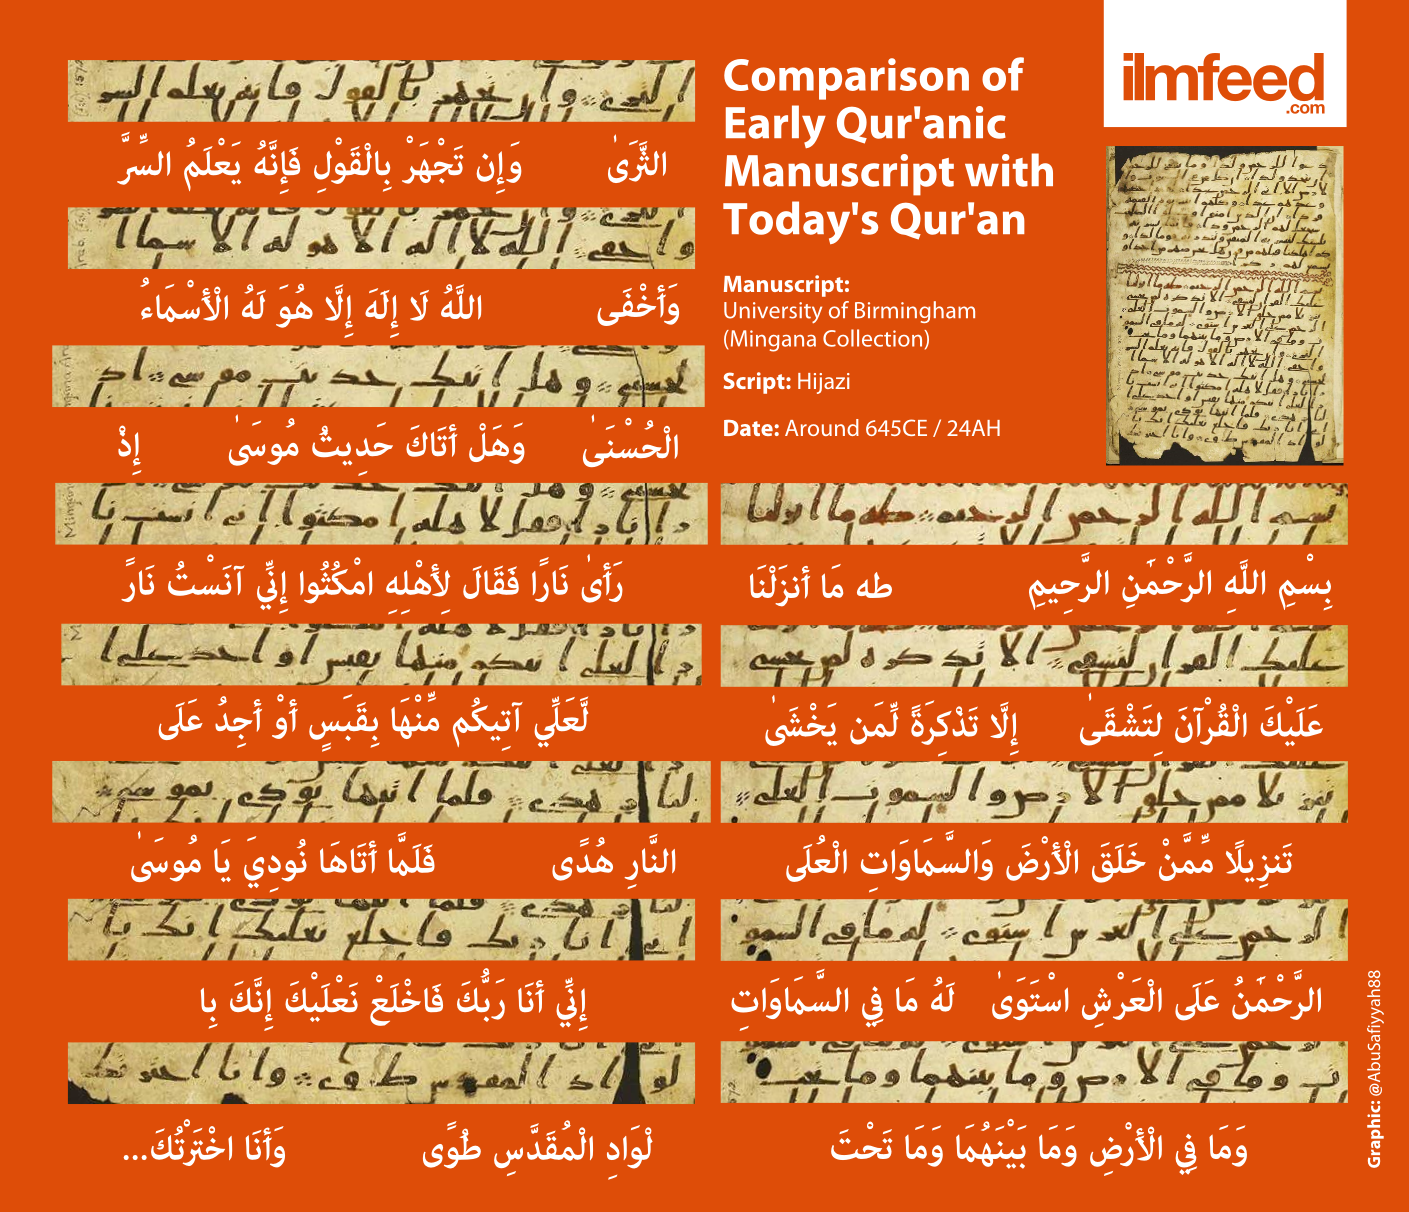 Quran found oldest World's Oldest